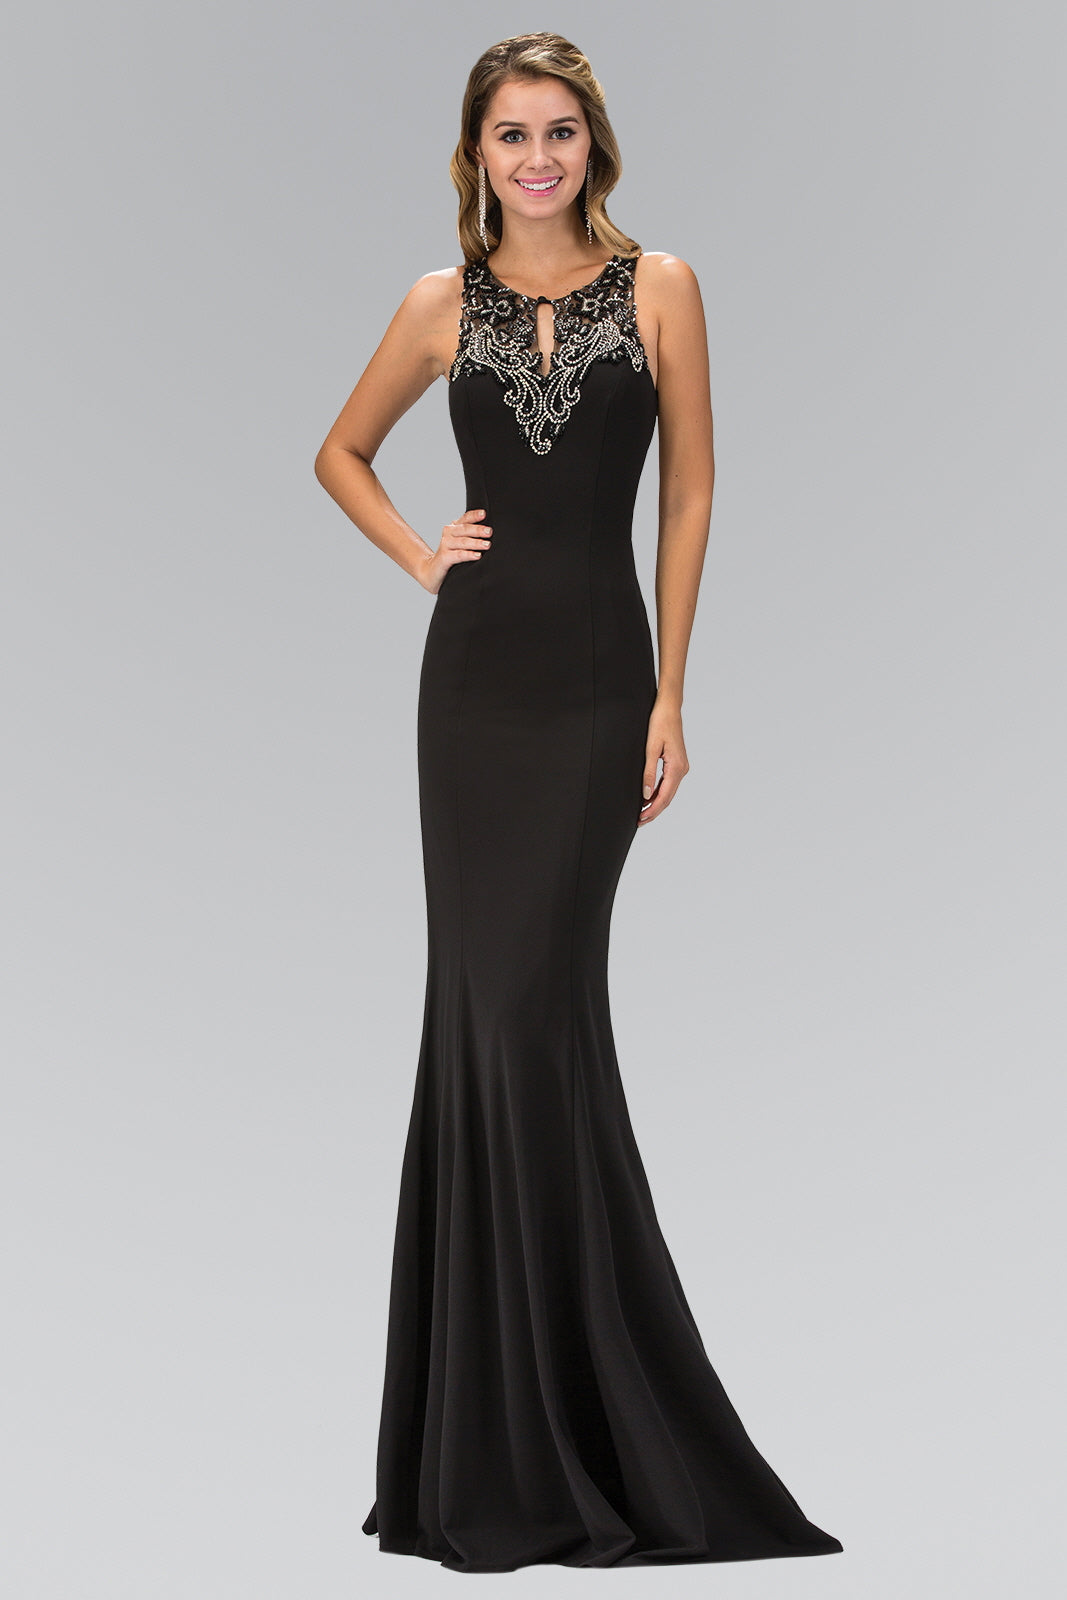 Prom Long Dress formal Evening Gown - The Dress Outlet Elizabeth K Black